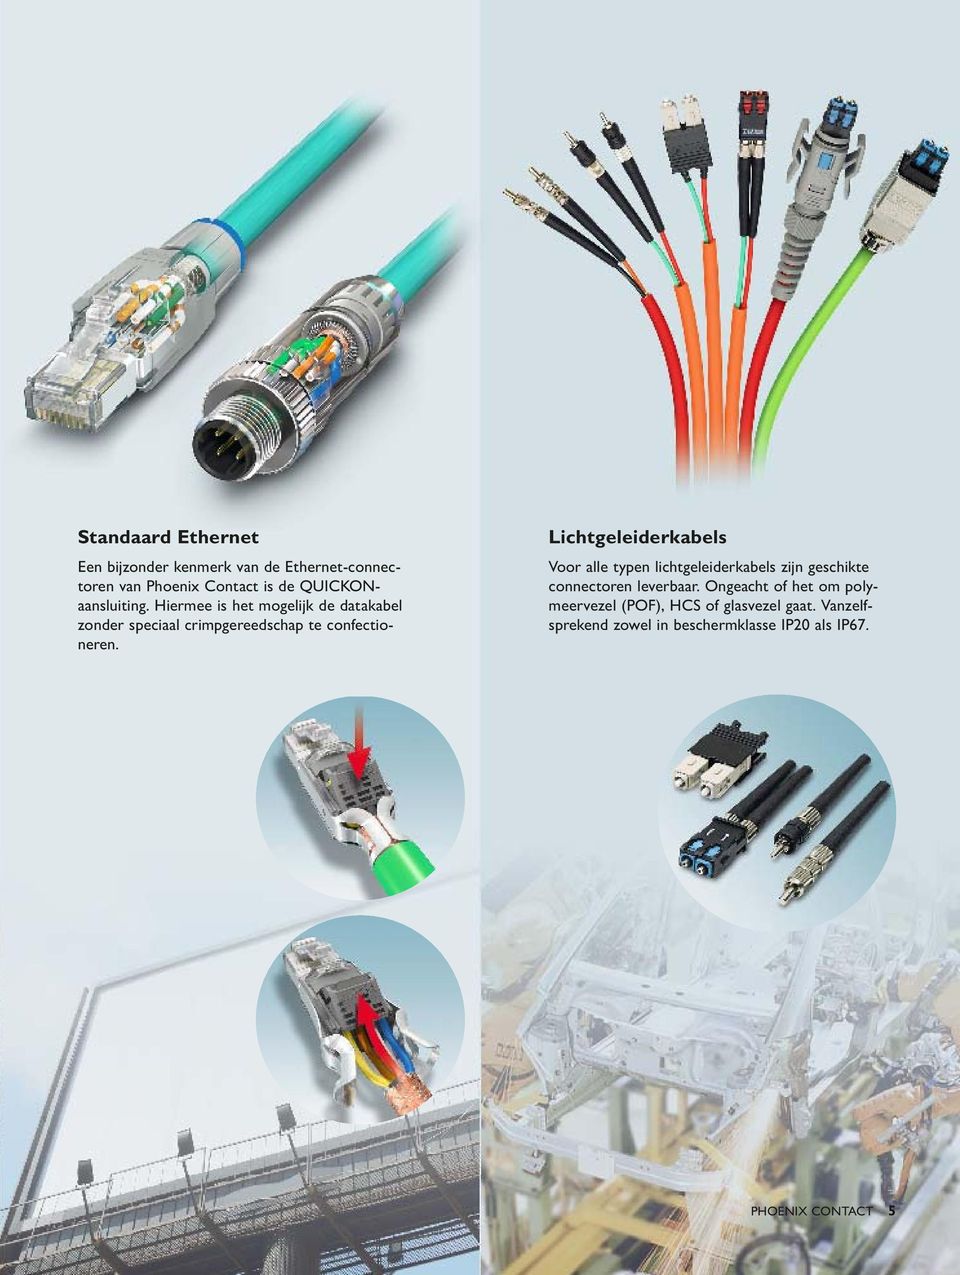 Lichtgeleiderkabels Voor alle typen lichtgeleiderkabels zijn geschikte connectoren leverbaar.